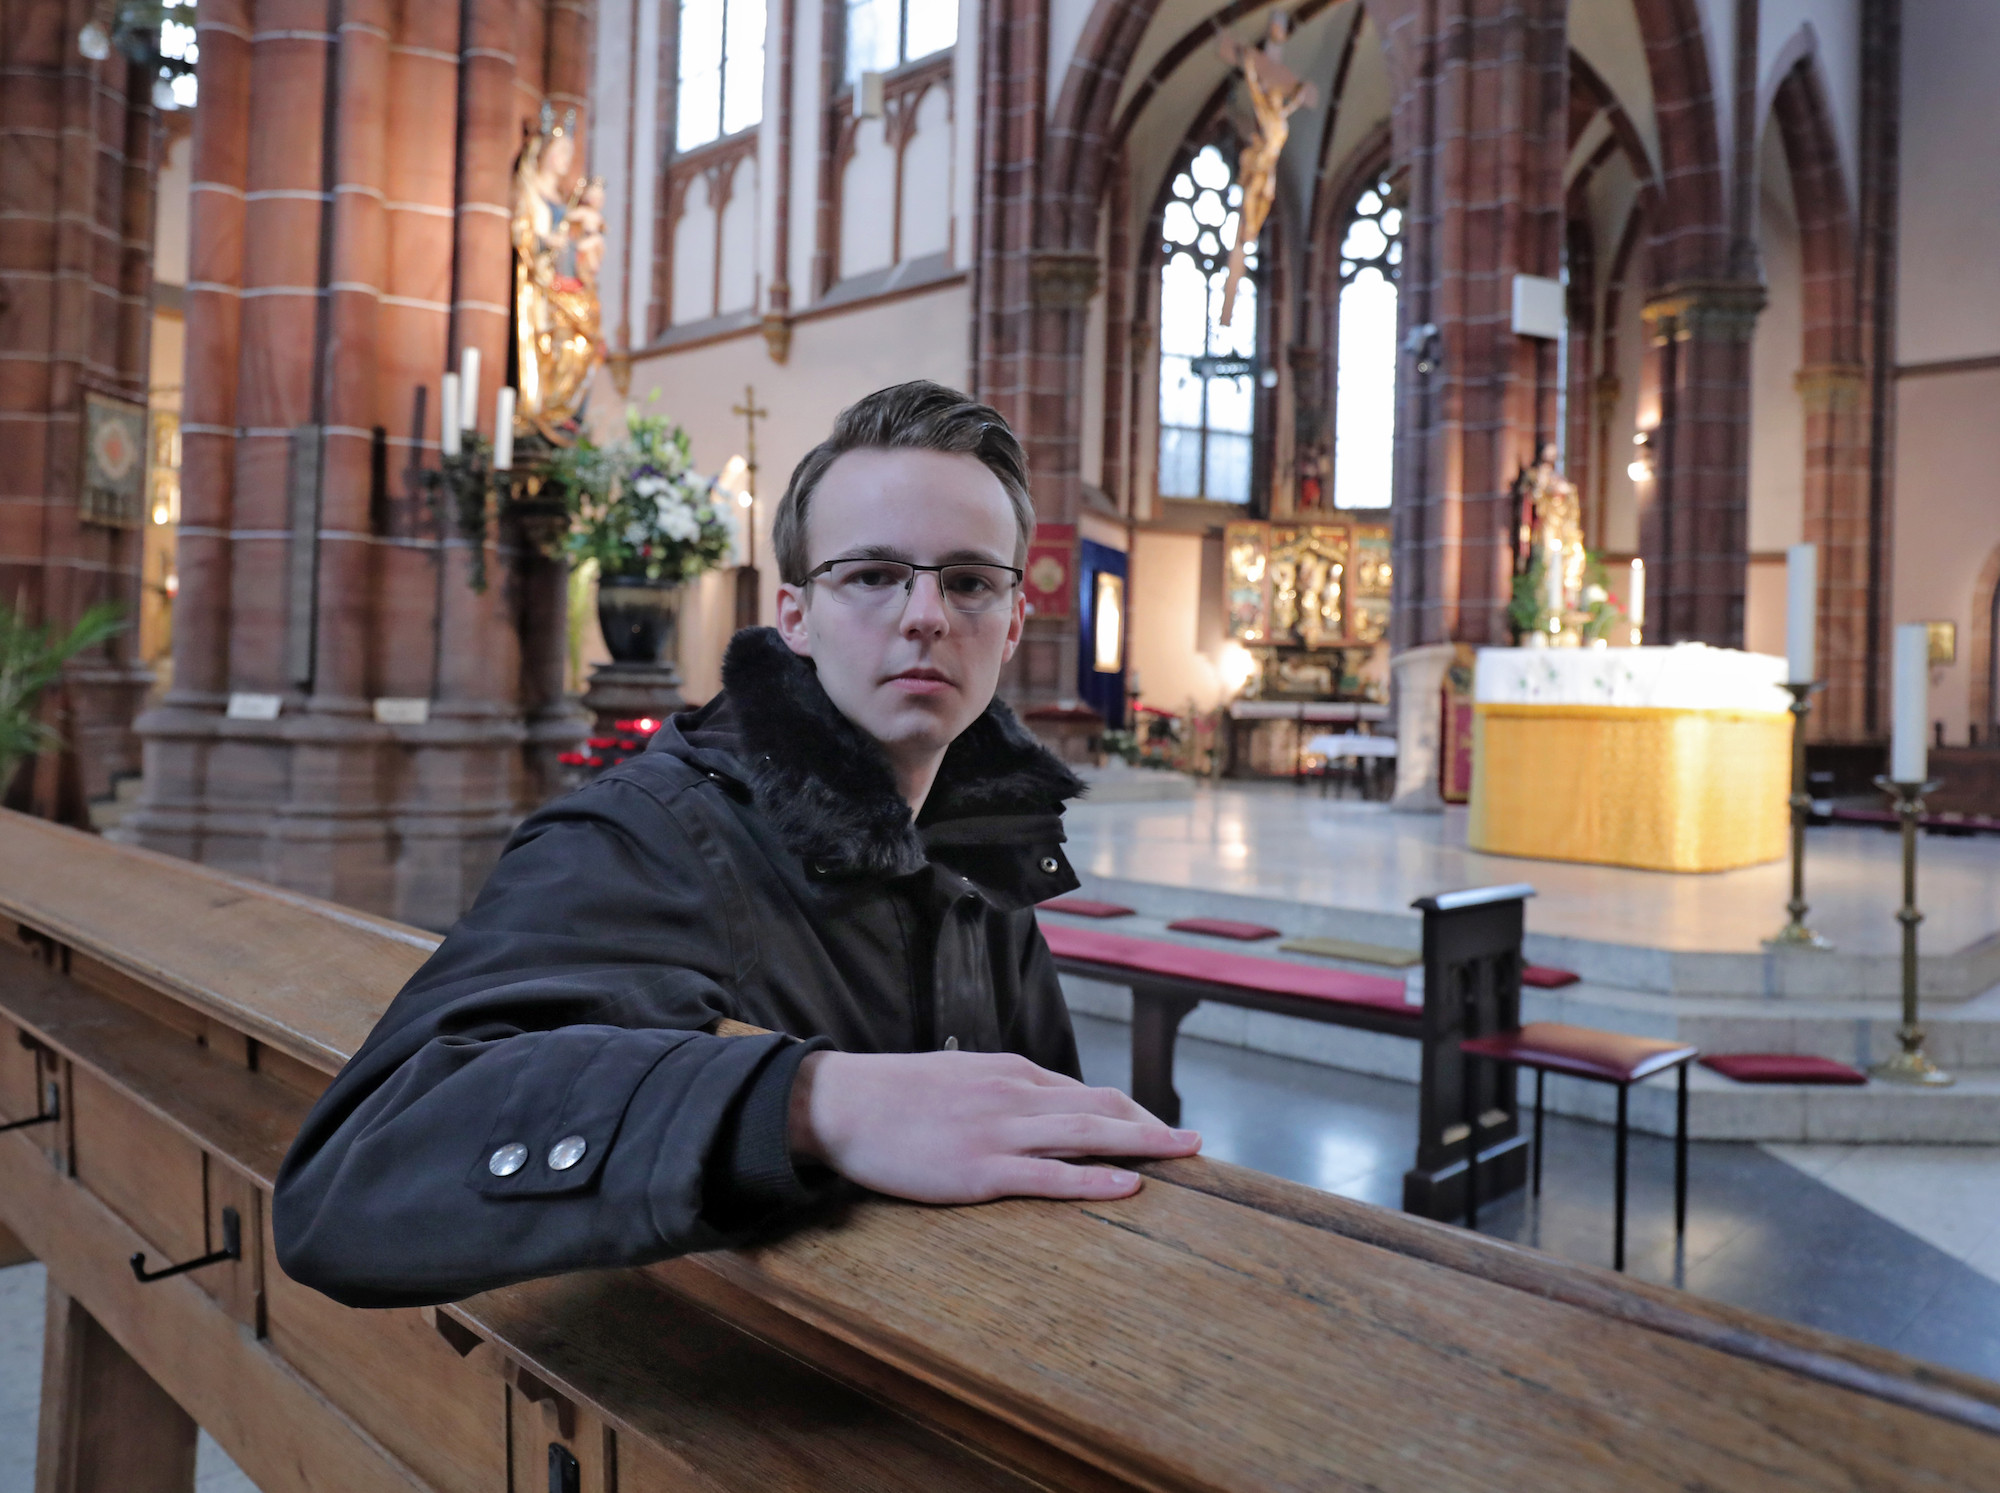 St. Johann Baptist, die größte Kirche Krefelds, steht vor einer ungewissen Zukunft. (c) Dirk Jochmann